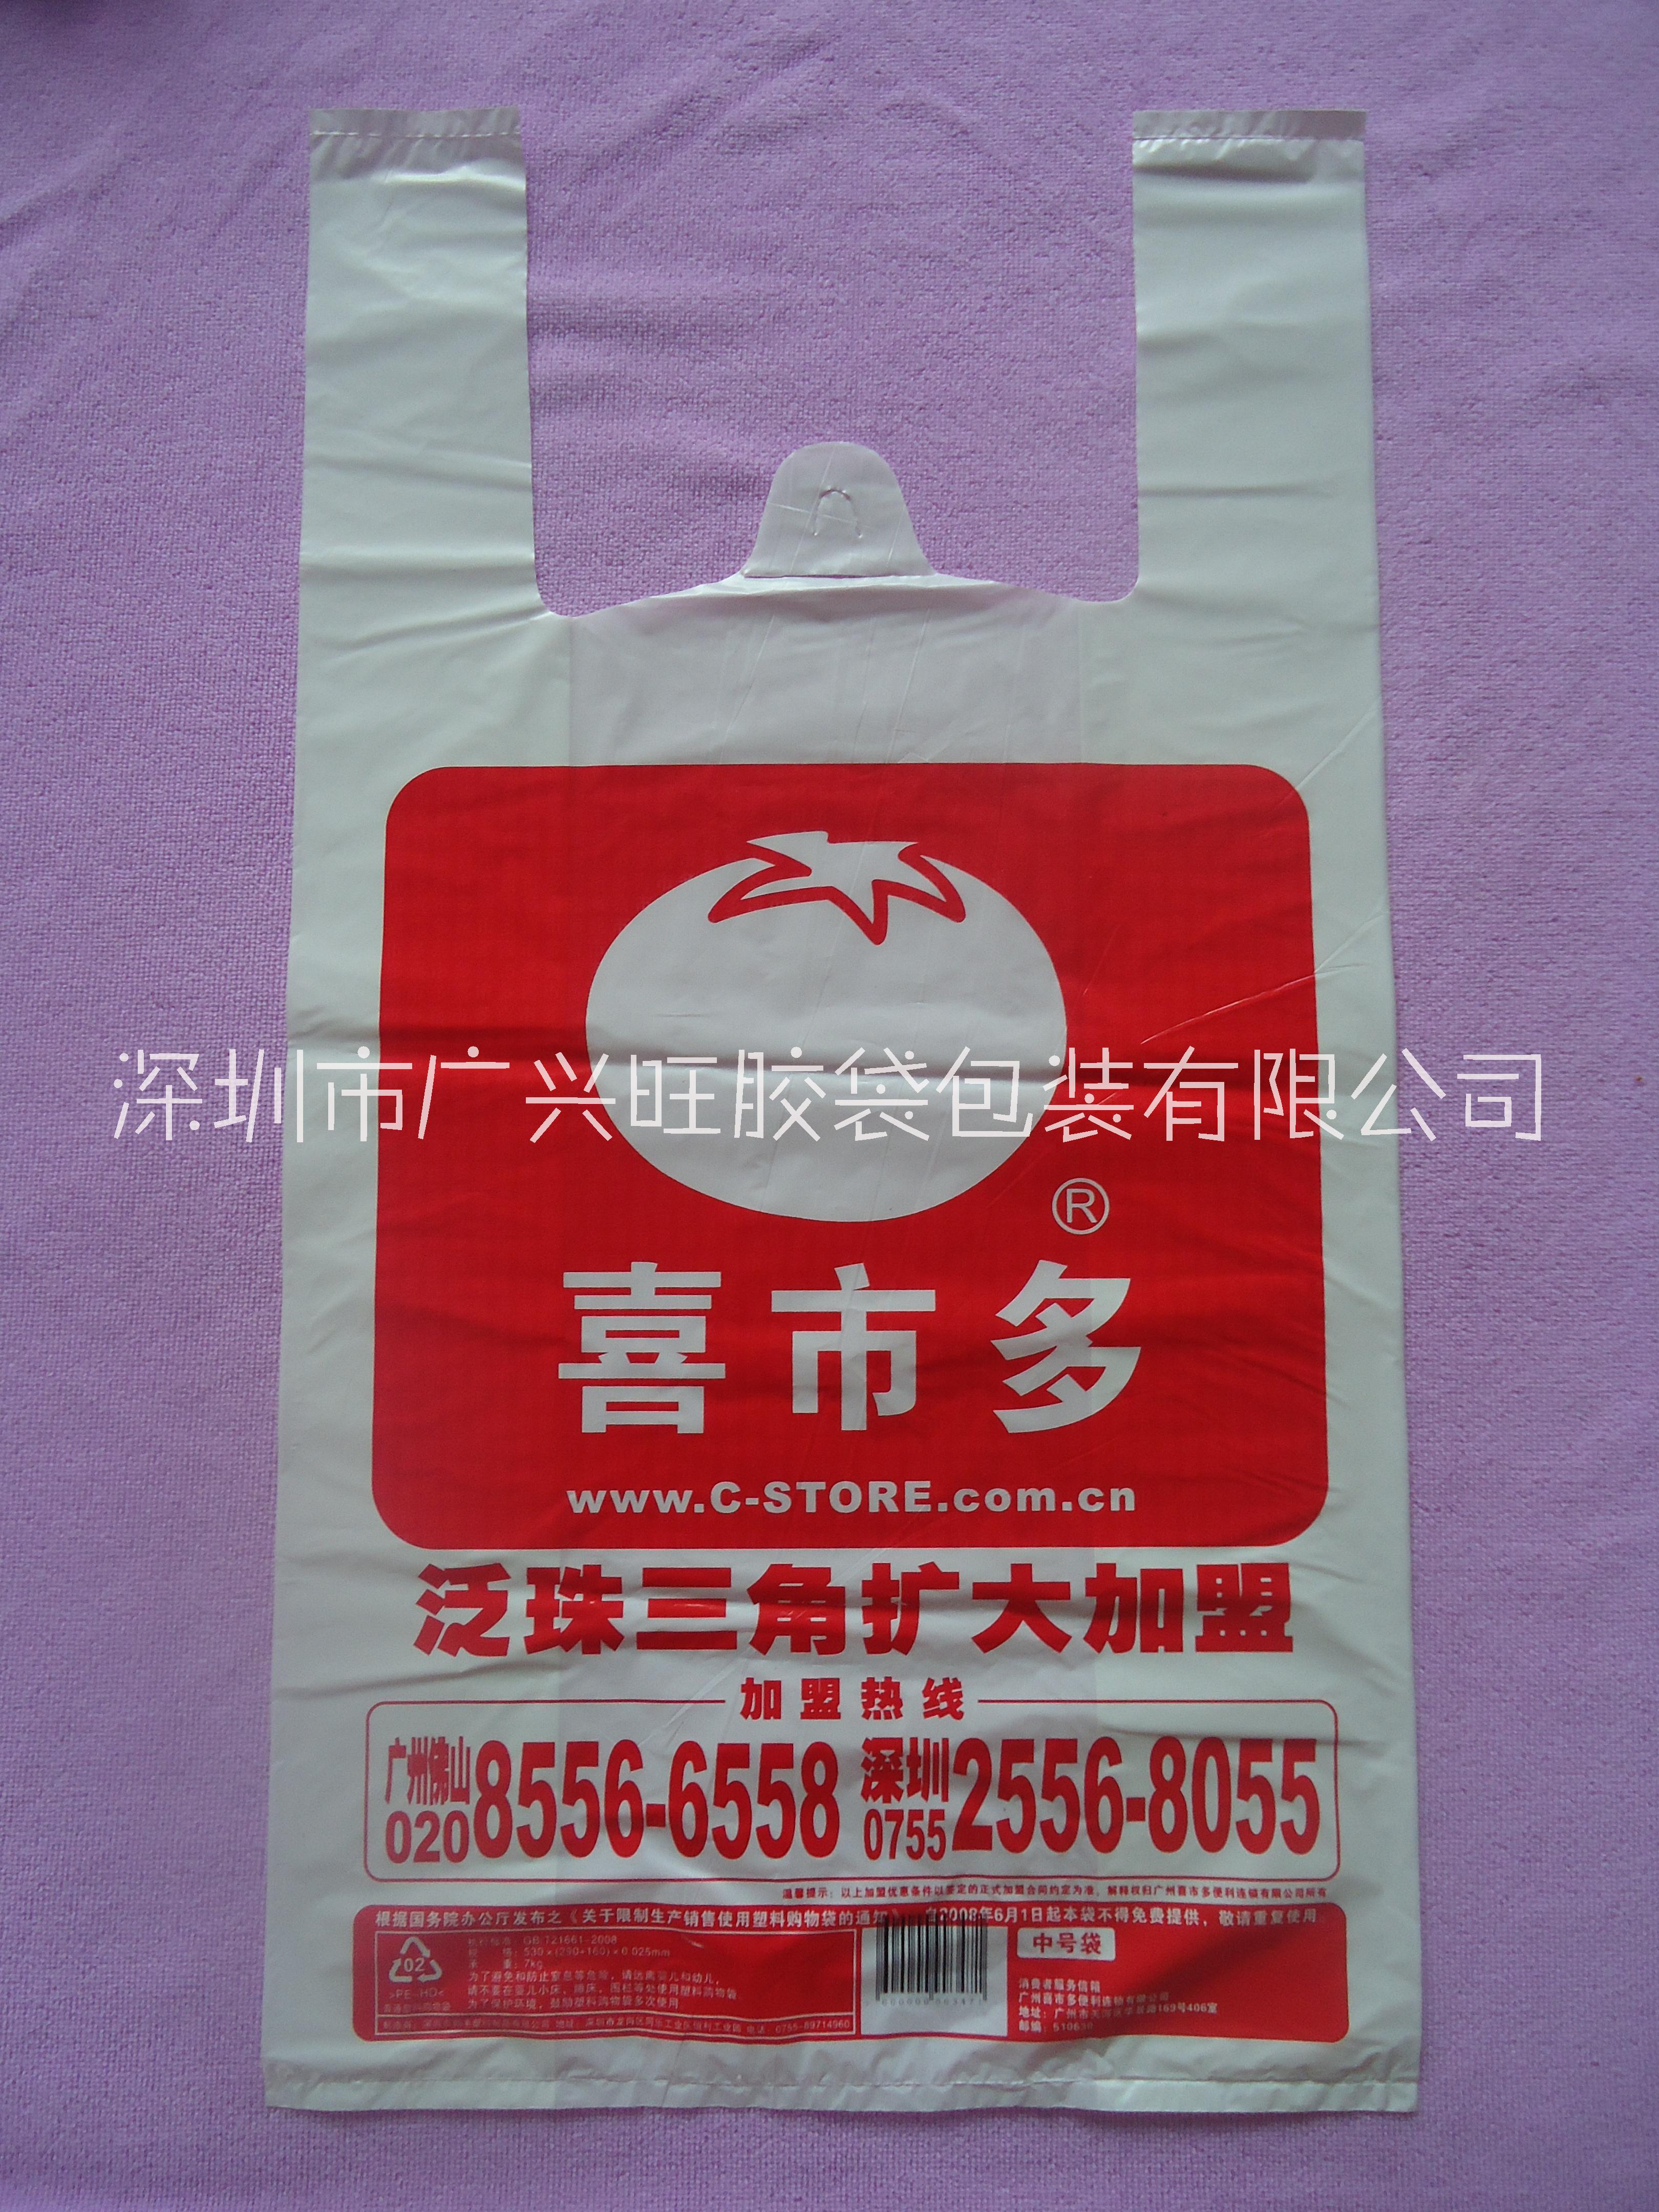 定制母婴店塑料袋 深圳市广兴旺胶袋厂生产母婴连锁店胶袋图片